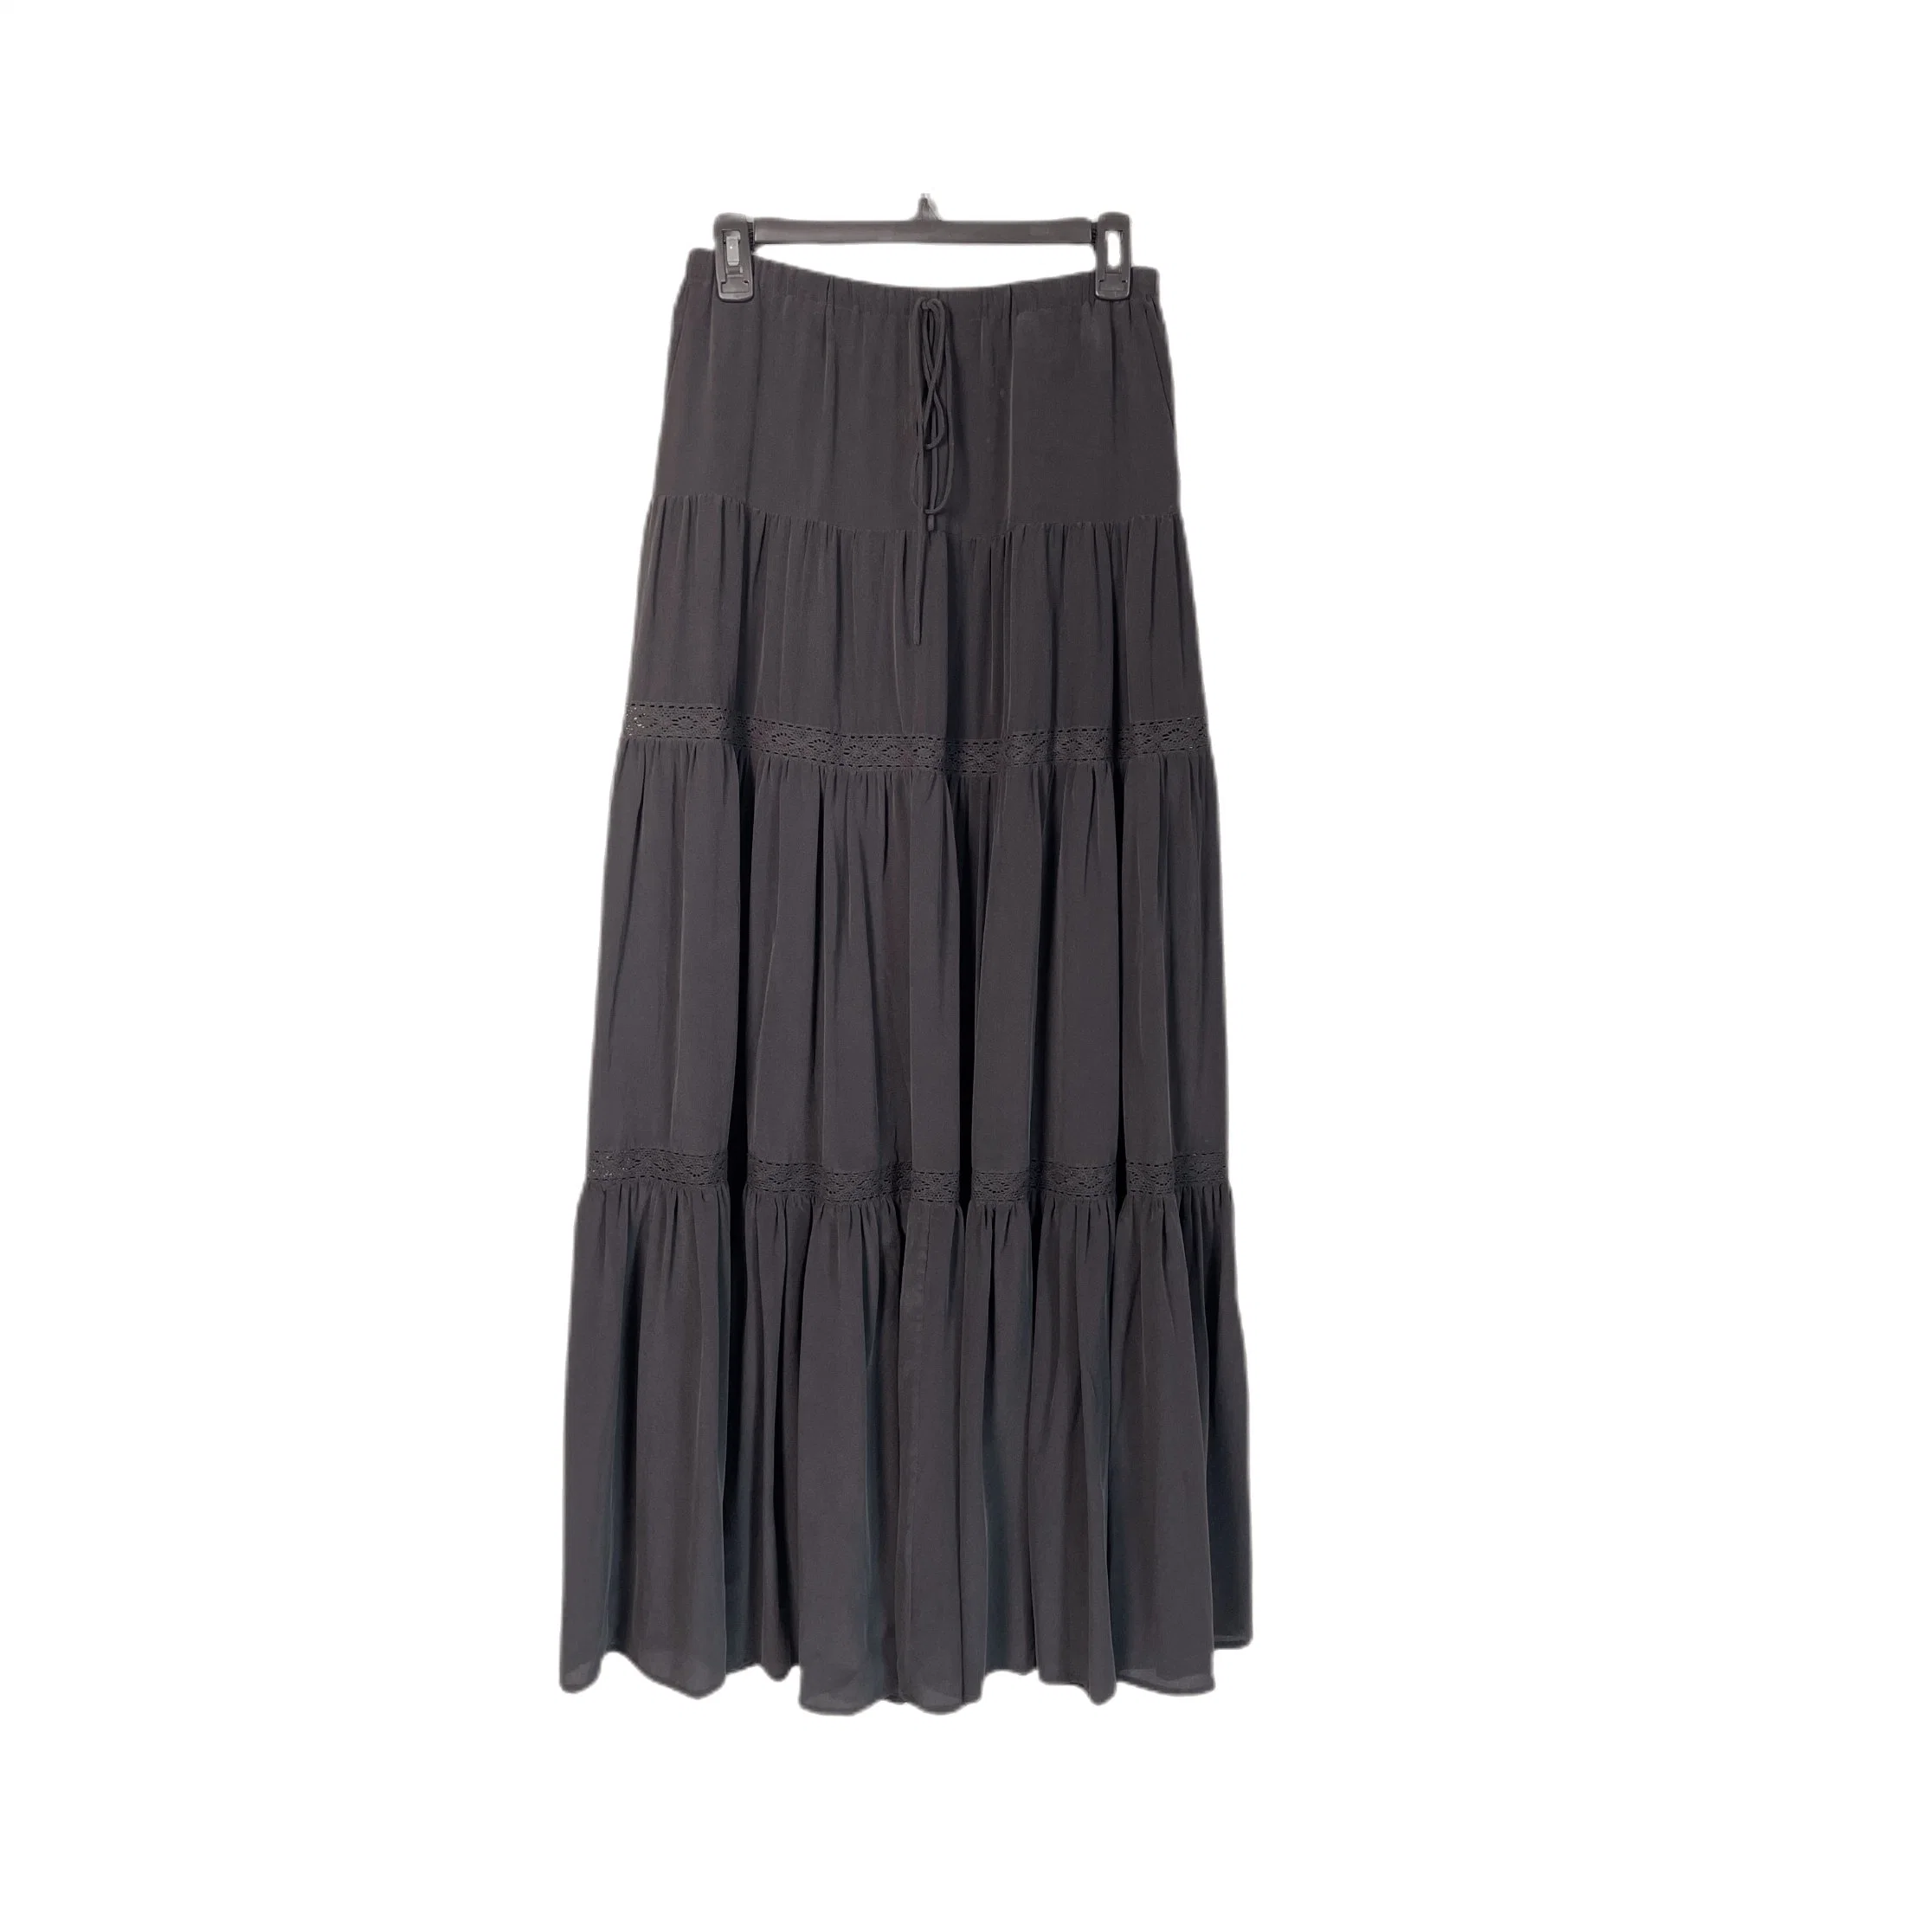 The latest High Waist Silk Cdc Sandwash Women Summer Long Maxi Skirt